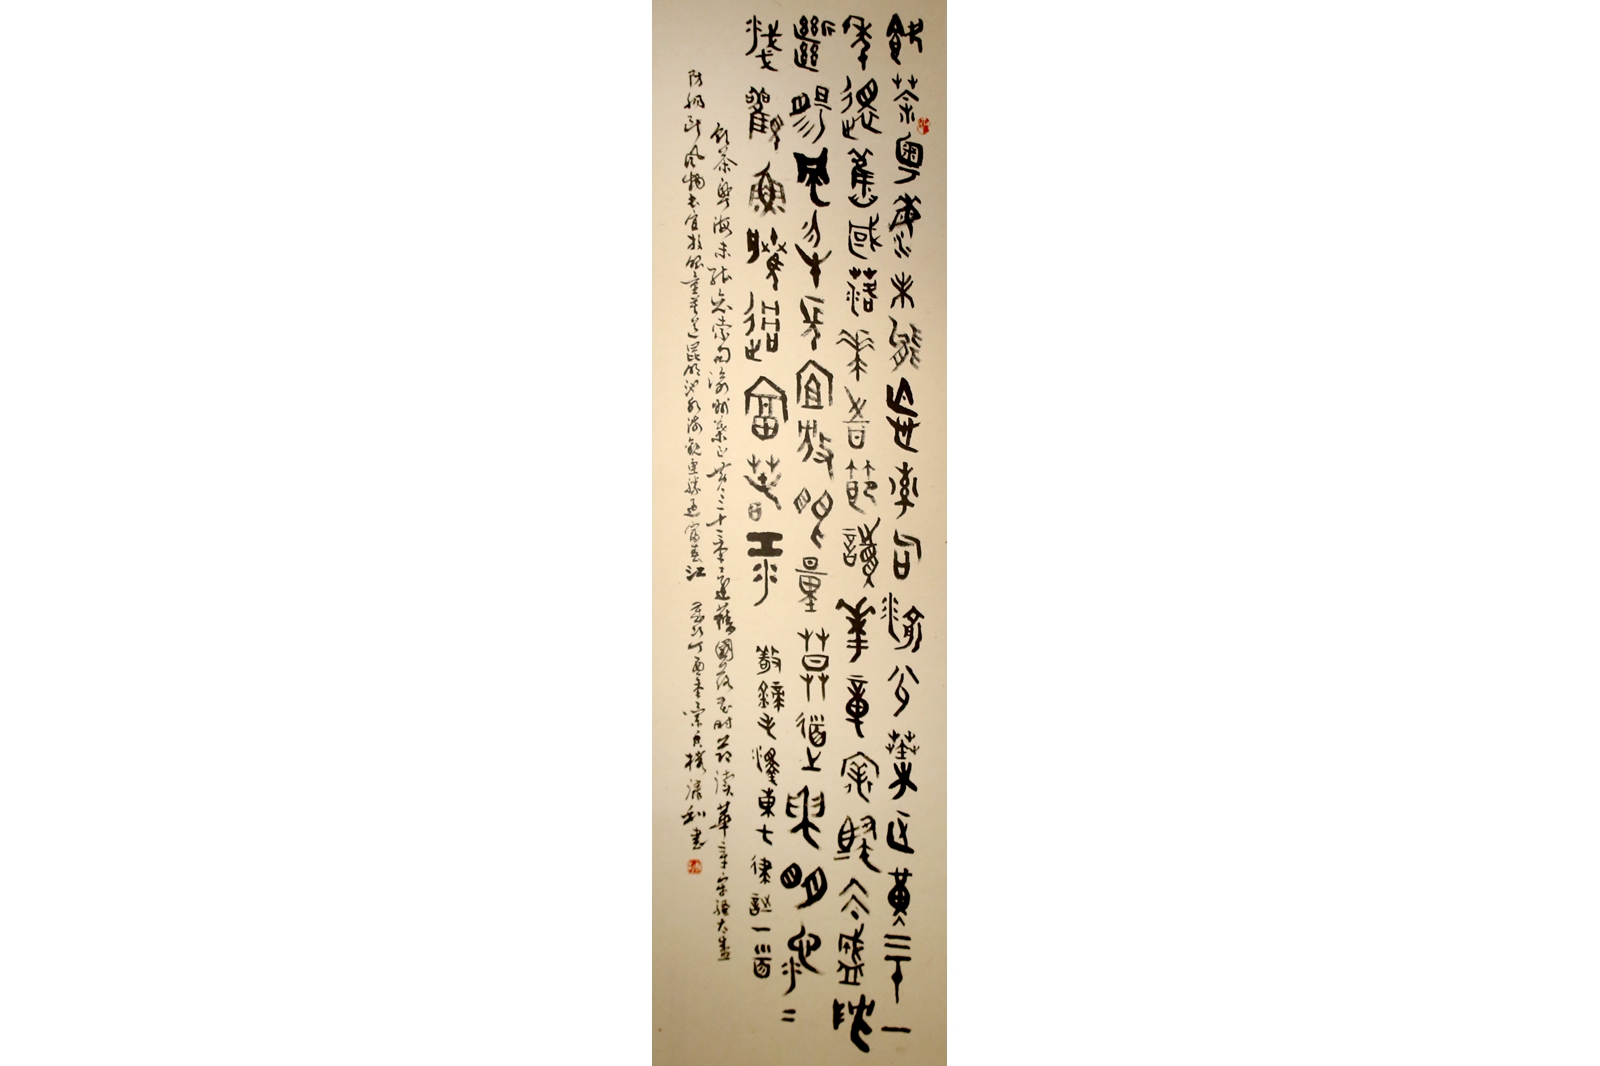 杨康利 《毛泽东诗词 · 和刘亚子先生》(图1)